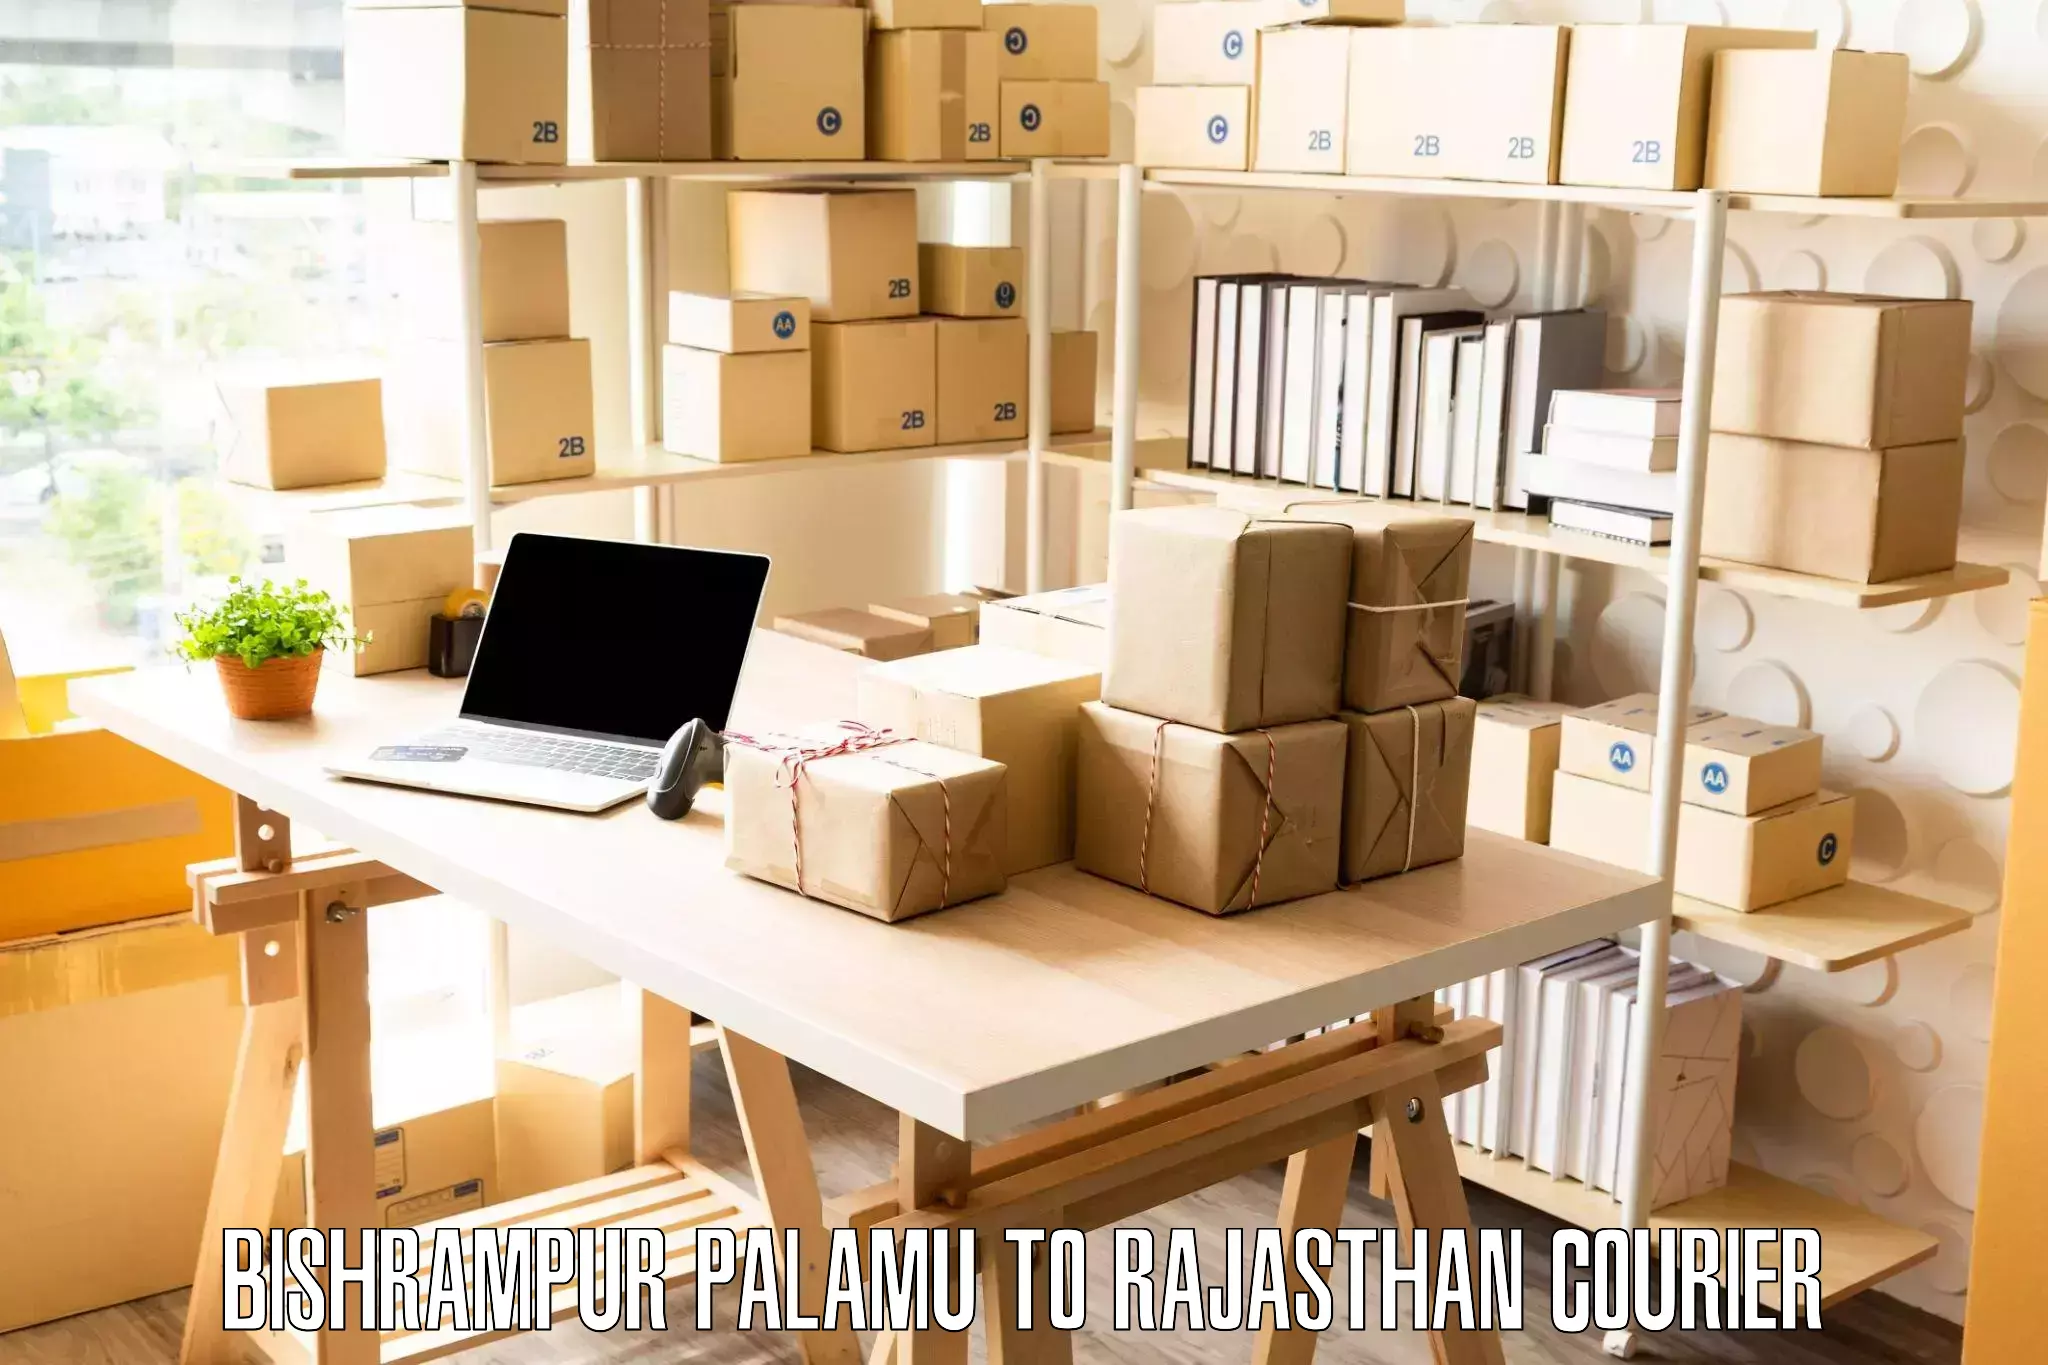 Furniture moving services in Bishrampur Palamu to Jaisalmer